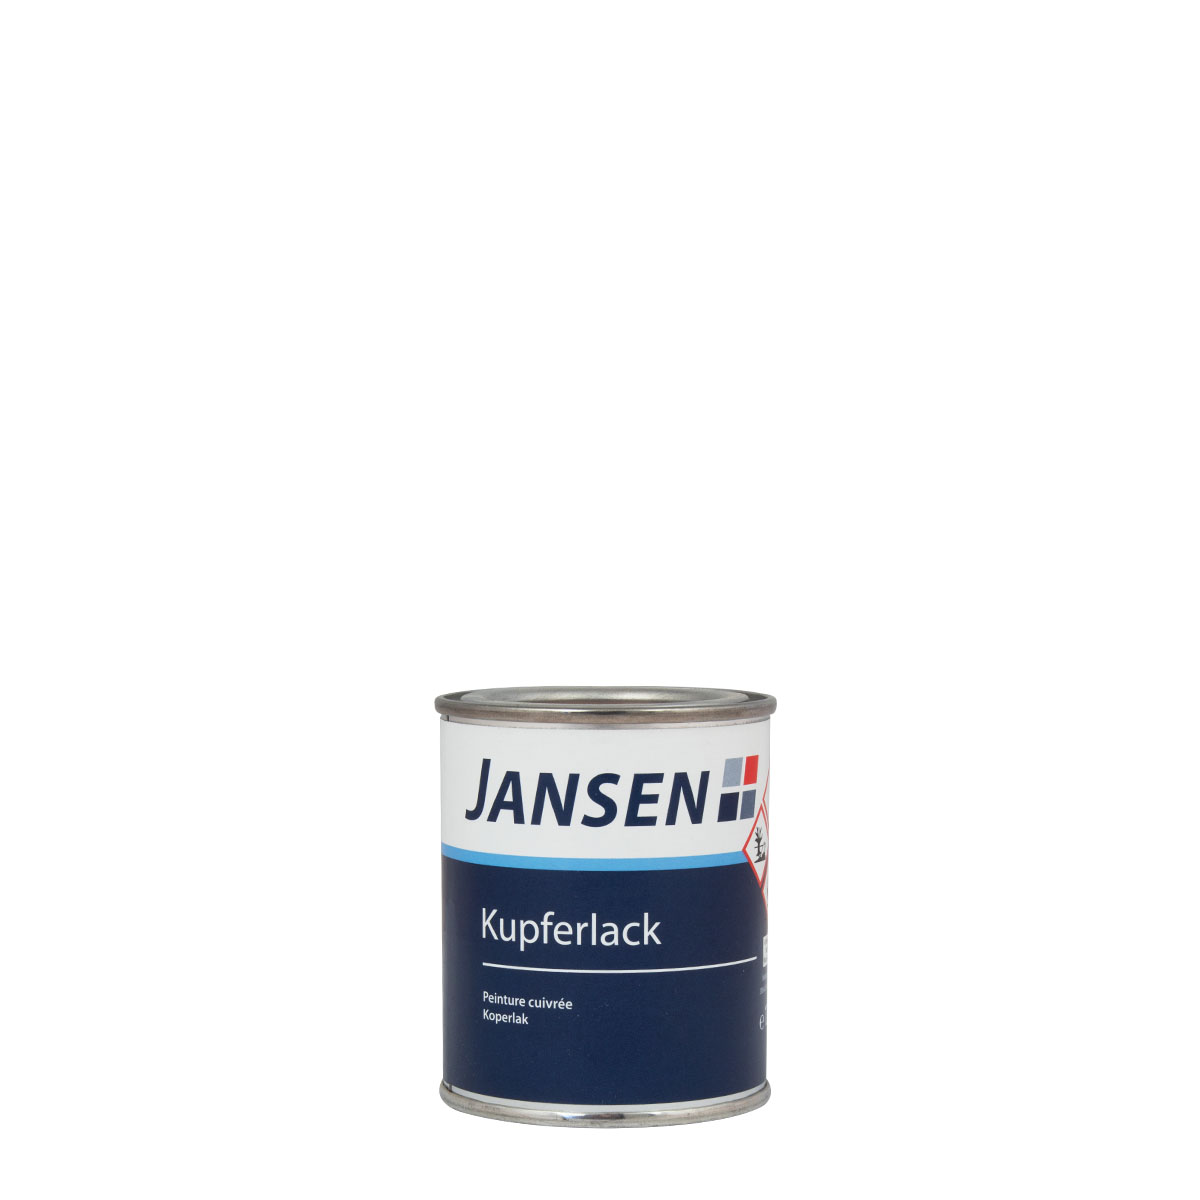 Jansen Kupferlack 125ml Altkupfer metallisch seidenglänzend